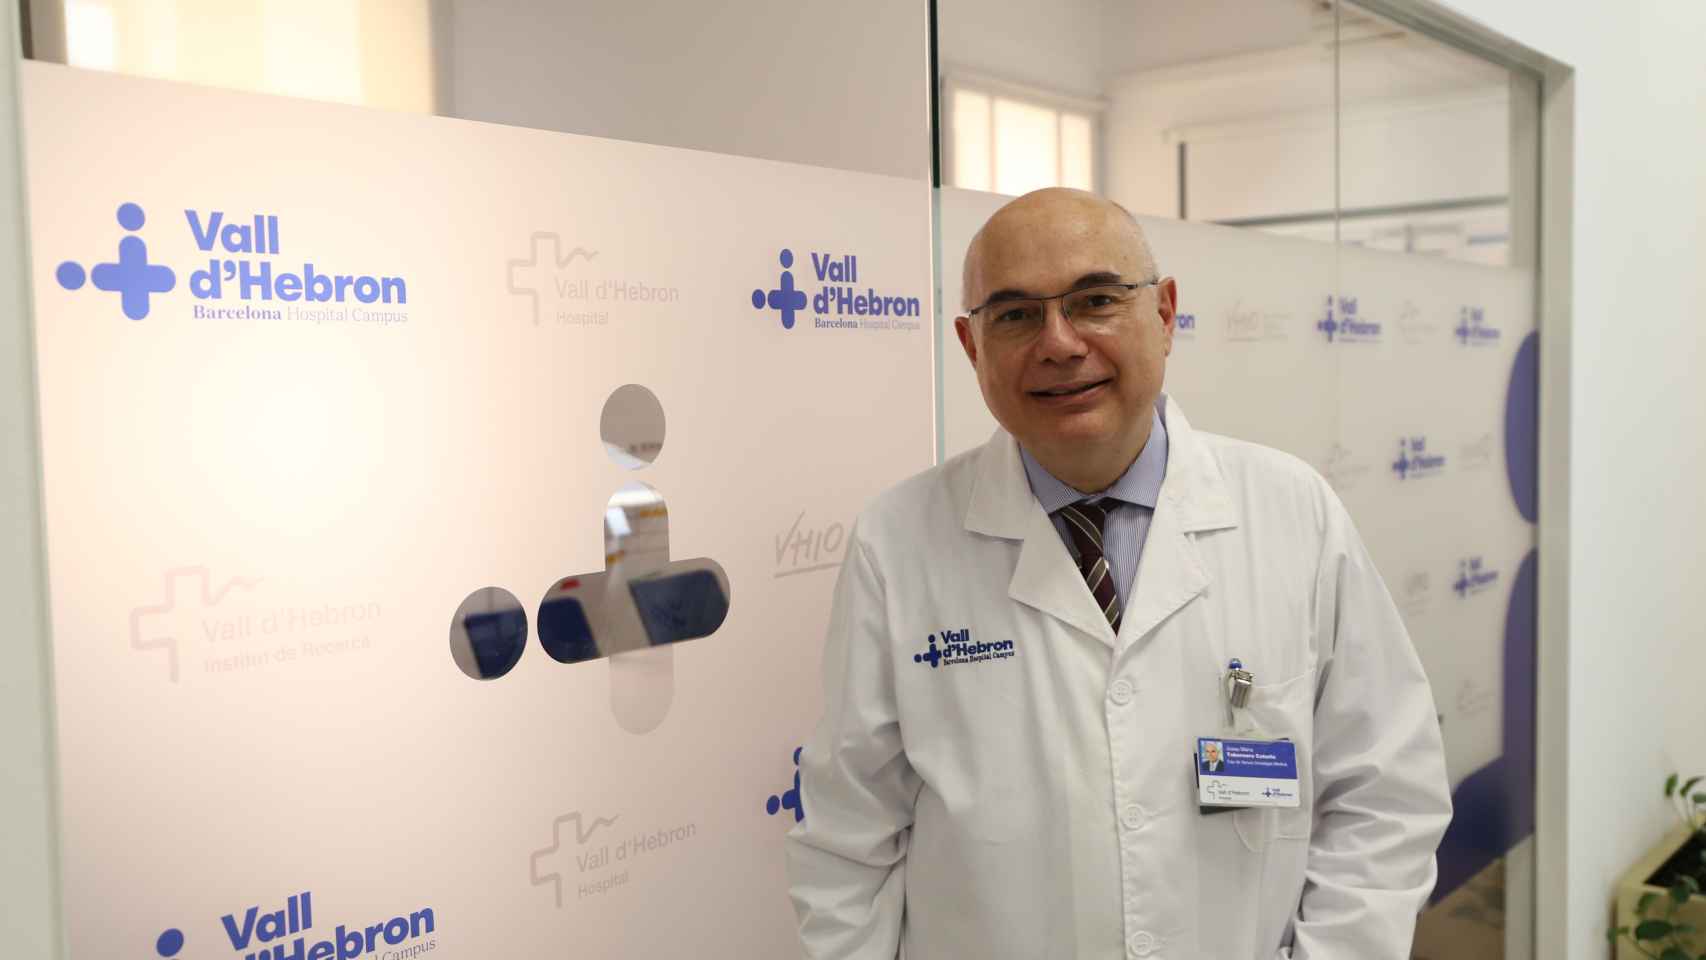 El doctor Josep Tabernero, un reputado oncólogo del Hospital Vall d'Hebron de Barcelona